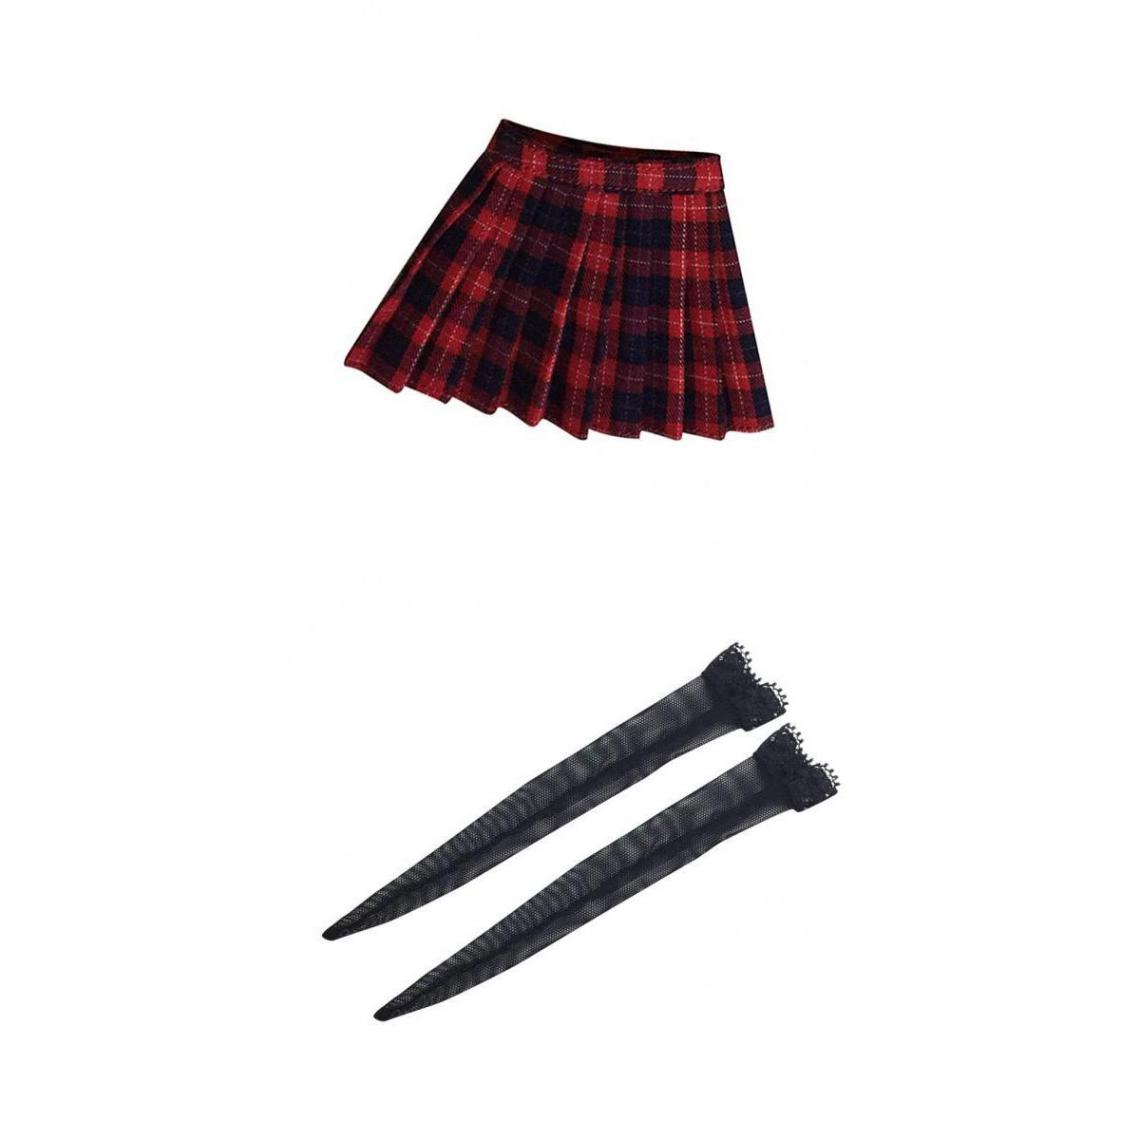 marque generique - 1/6 Chaussettes Noires et Mini Jupe à Carreaux Femme Vêtements pour Figurine Poupée 12 pouces - Films et séries